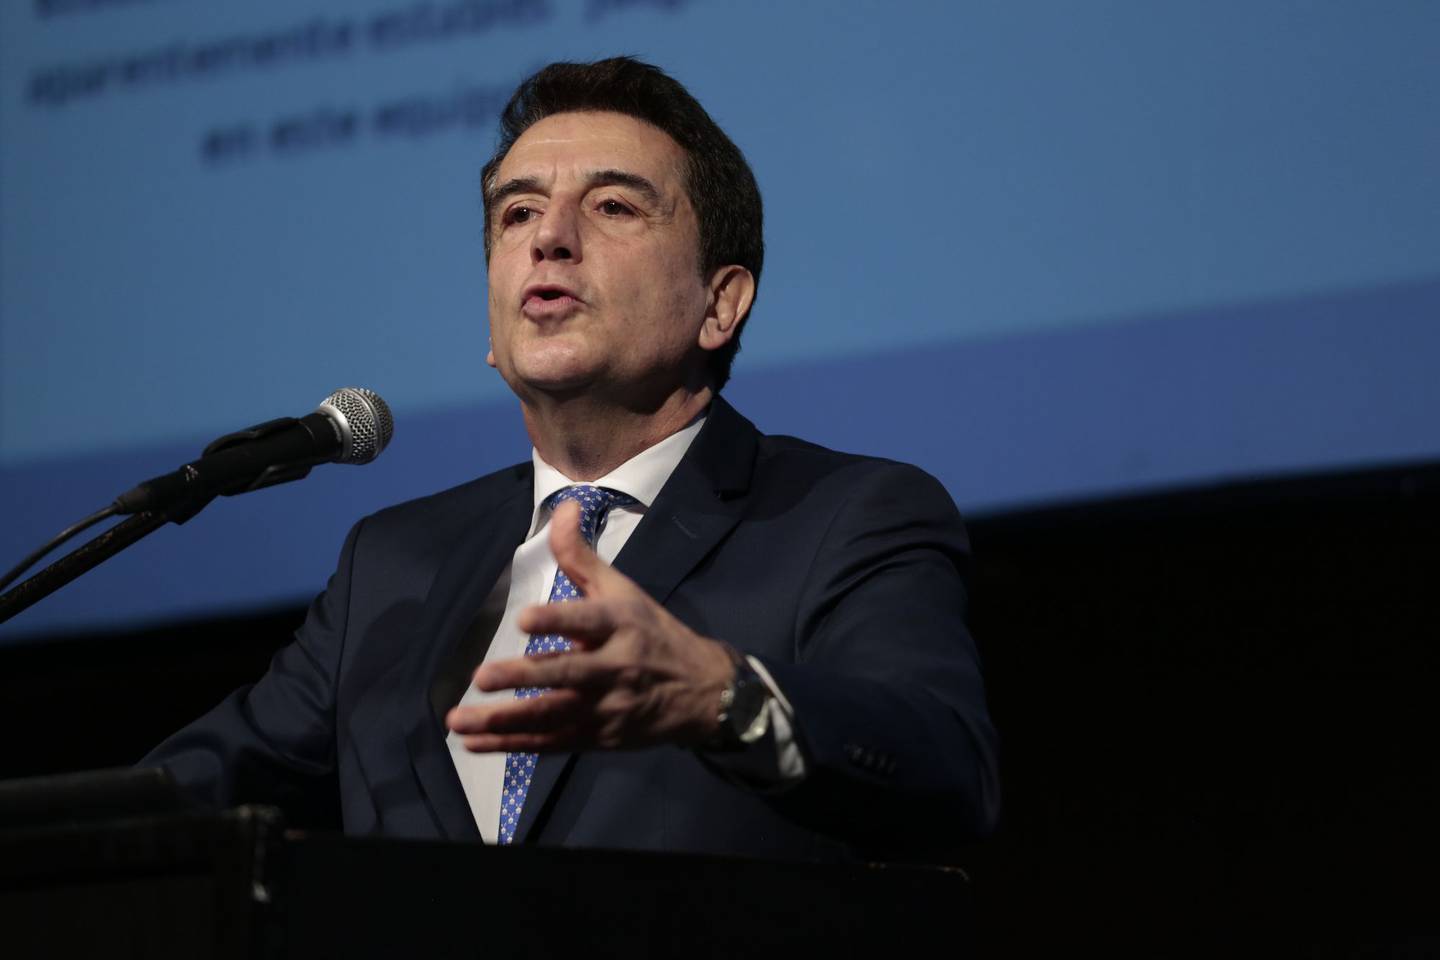 El economista habla durante la Conferencia Anual del IAEF en Buenos Aires, Argentina, en junio de 2017.